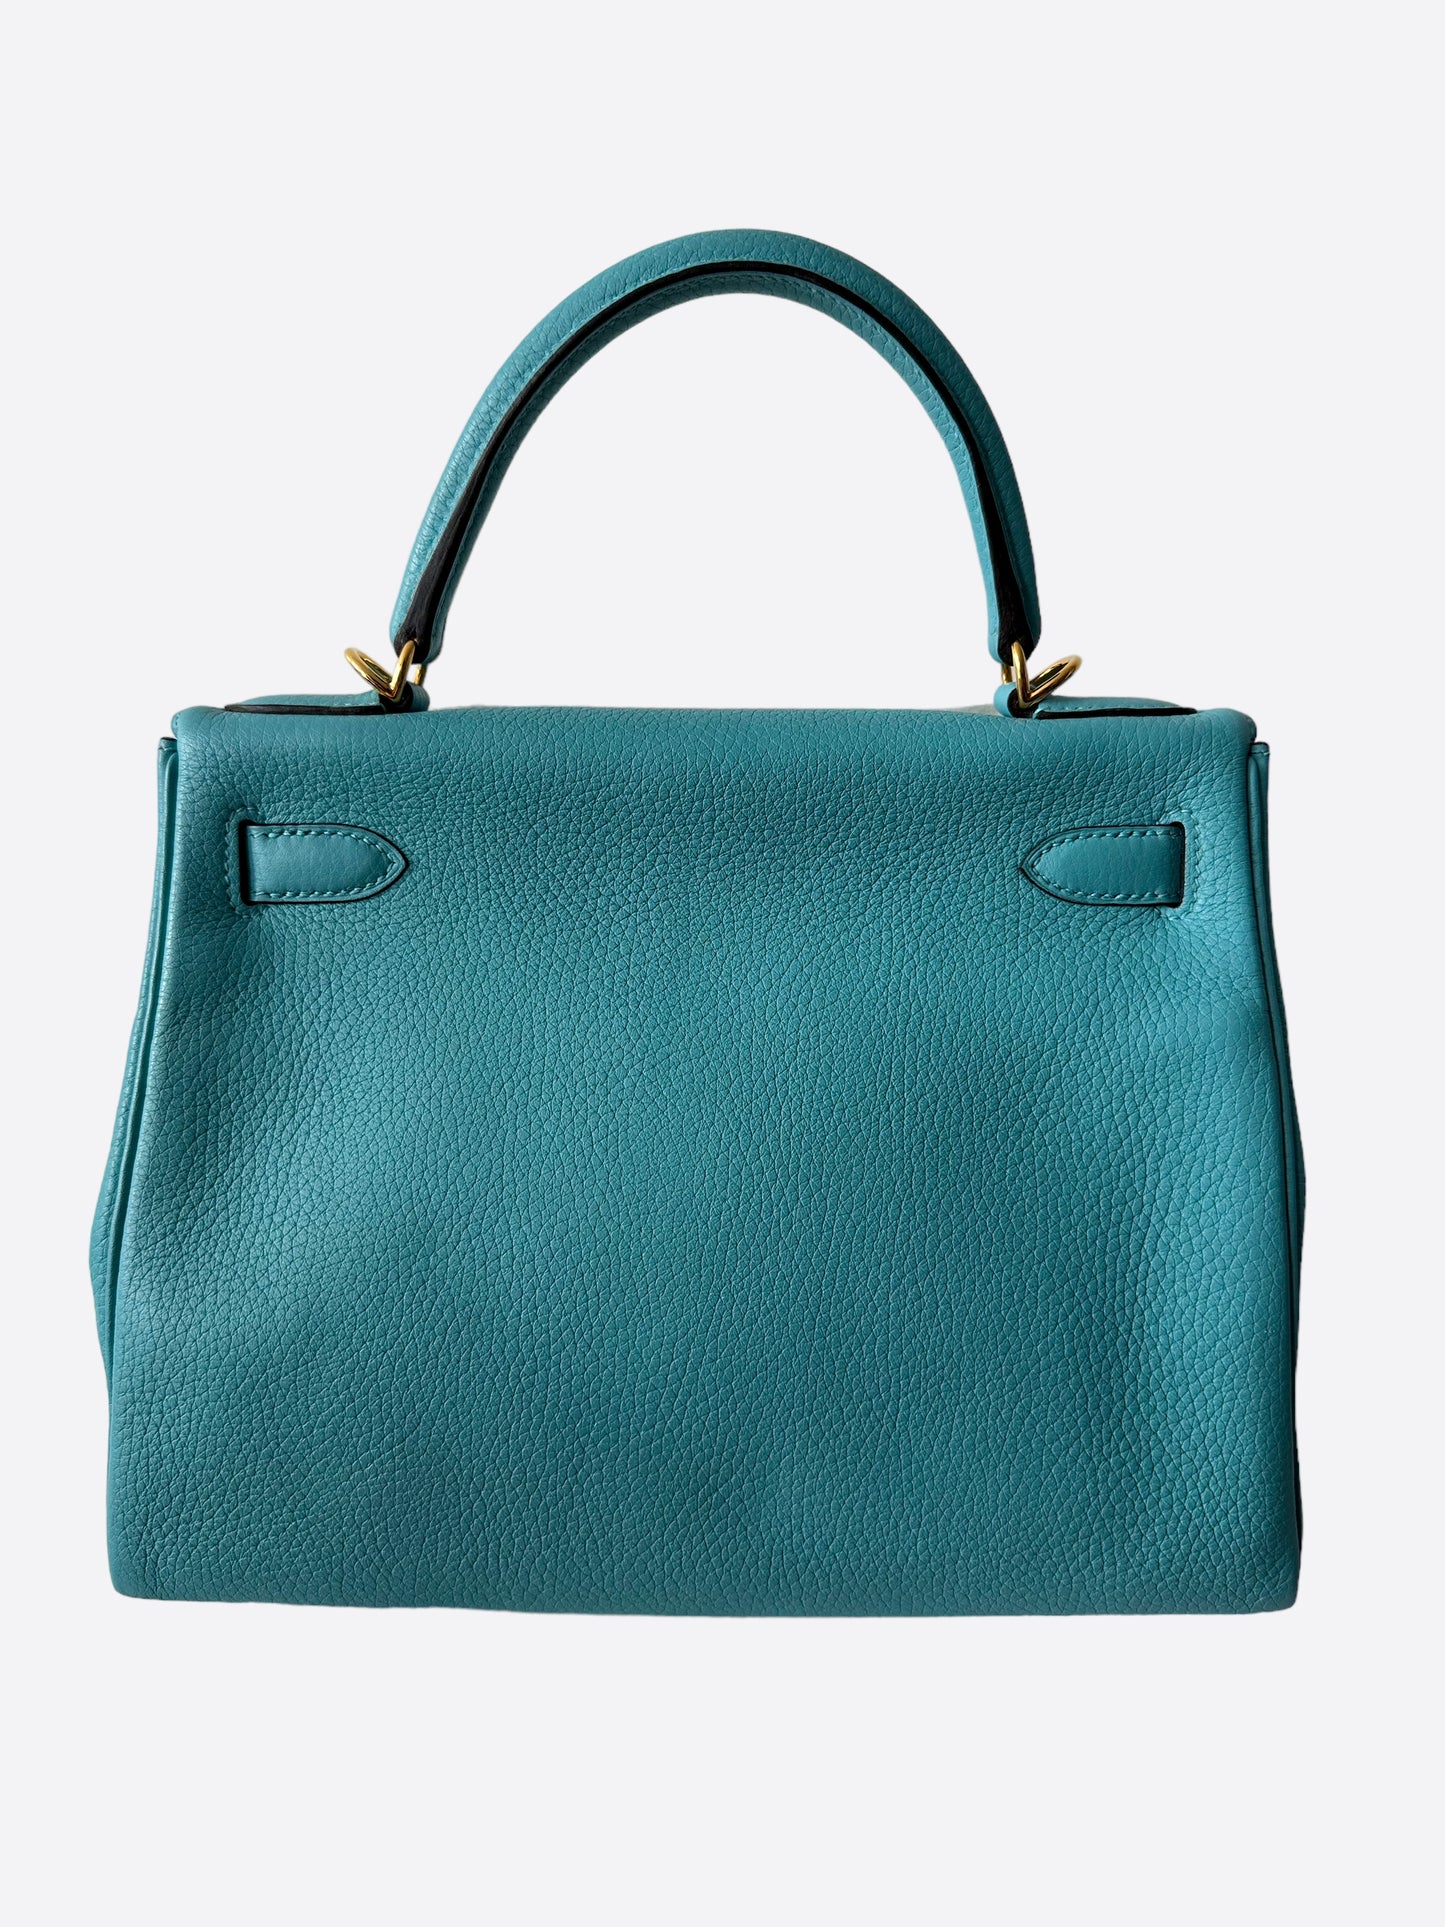 Hermès Tiffany Blue Togo leather Kelly 28